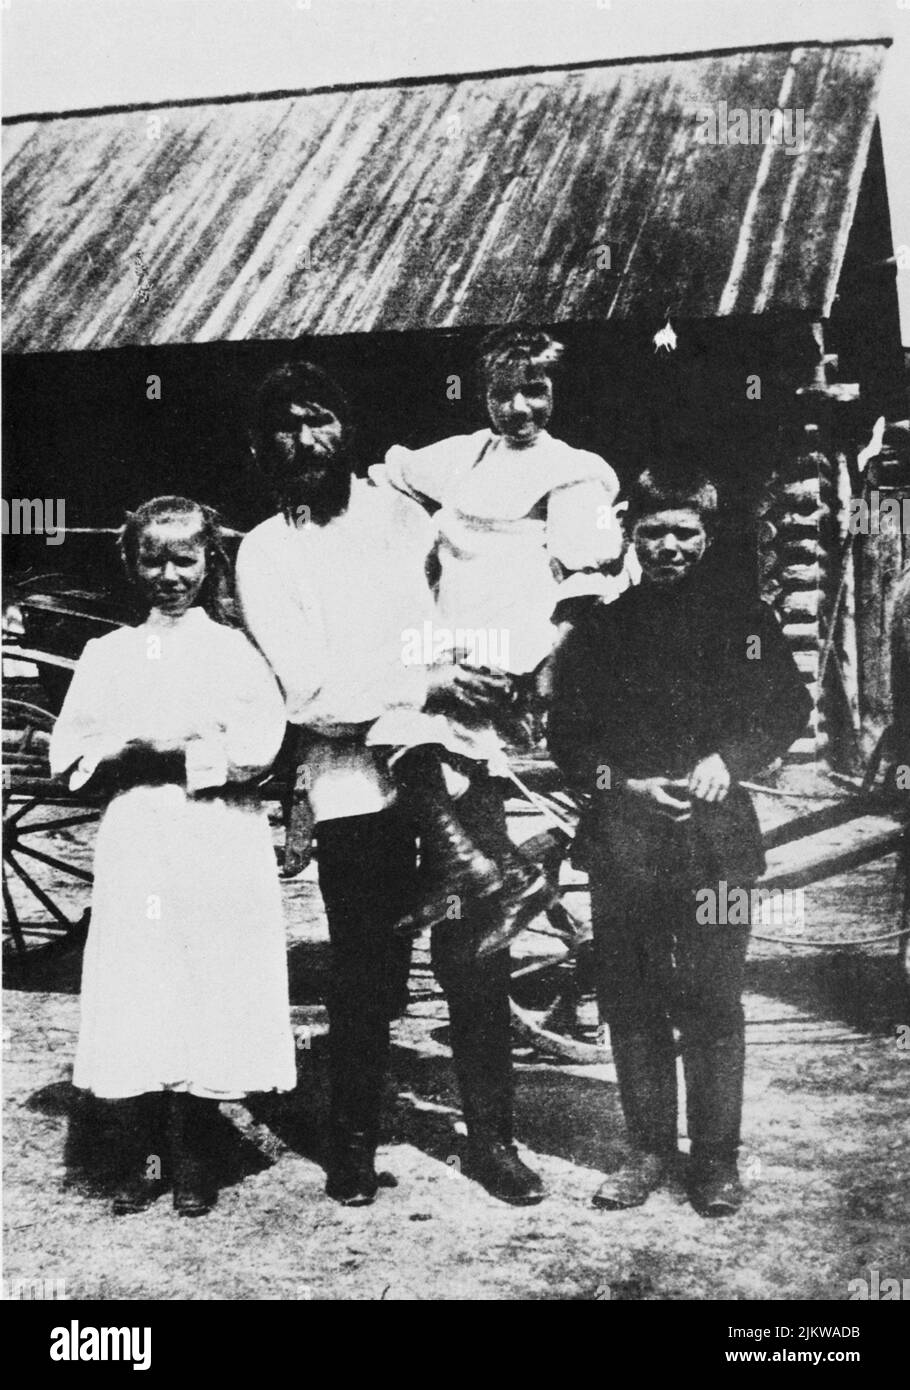 1910 ca. : Il celebre sacerdote russo Grigorij Efimovic RASPUTIN ( Pockrovskoe , Siberia 1871 - San Pietroburgo 1916 ) con i suoi figli in Pokrovskoe ( a sinistra MATRENA ) - MAGO - MAGO - prete - monaco - ritratto - ratto - barba - politico - politico ---- Archivio GBB Foto Stock